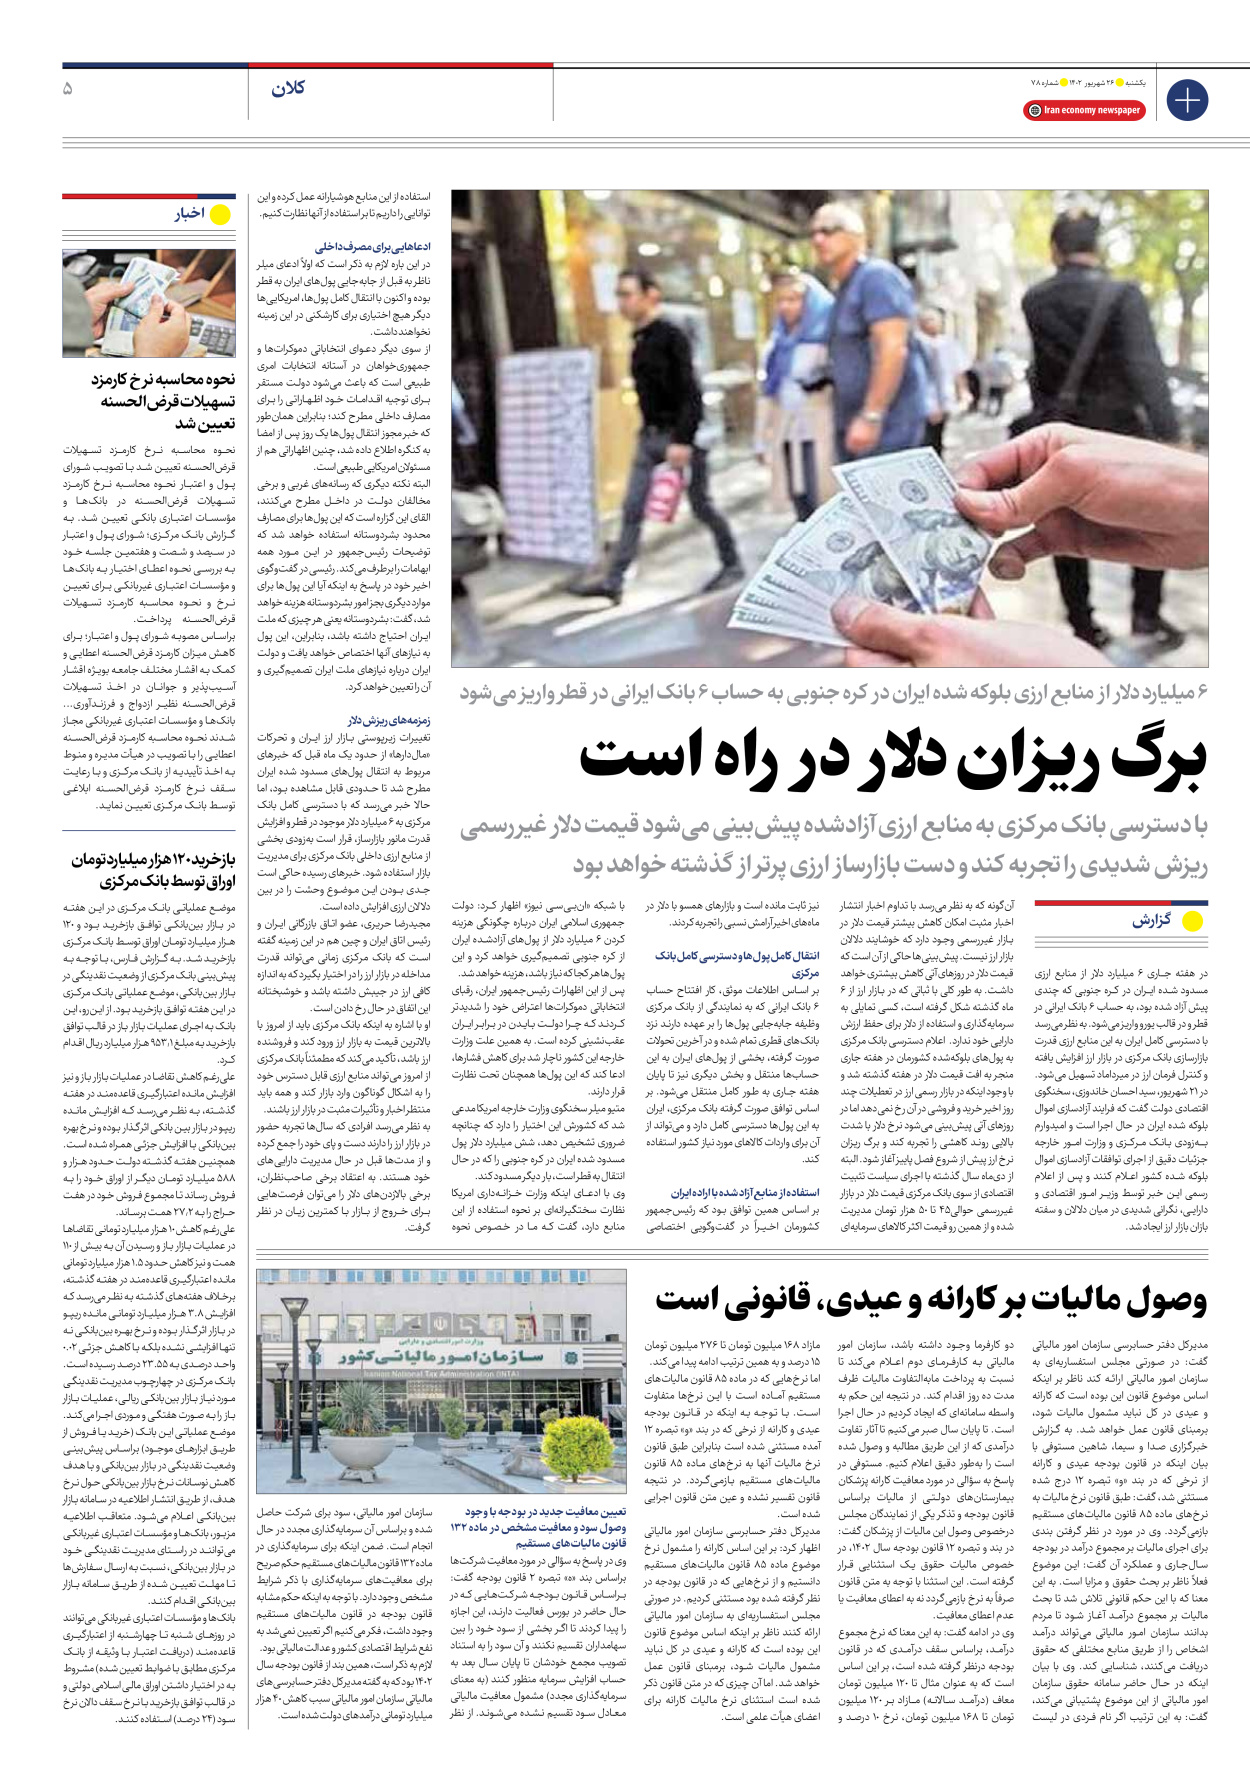 روزنامه ایران اقتصادی - شماره هفتاد و هشت - ۲۶ شهریور ۱۴۰۲ - صفحه ۵